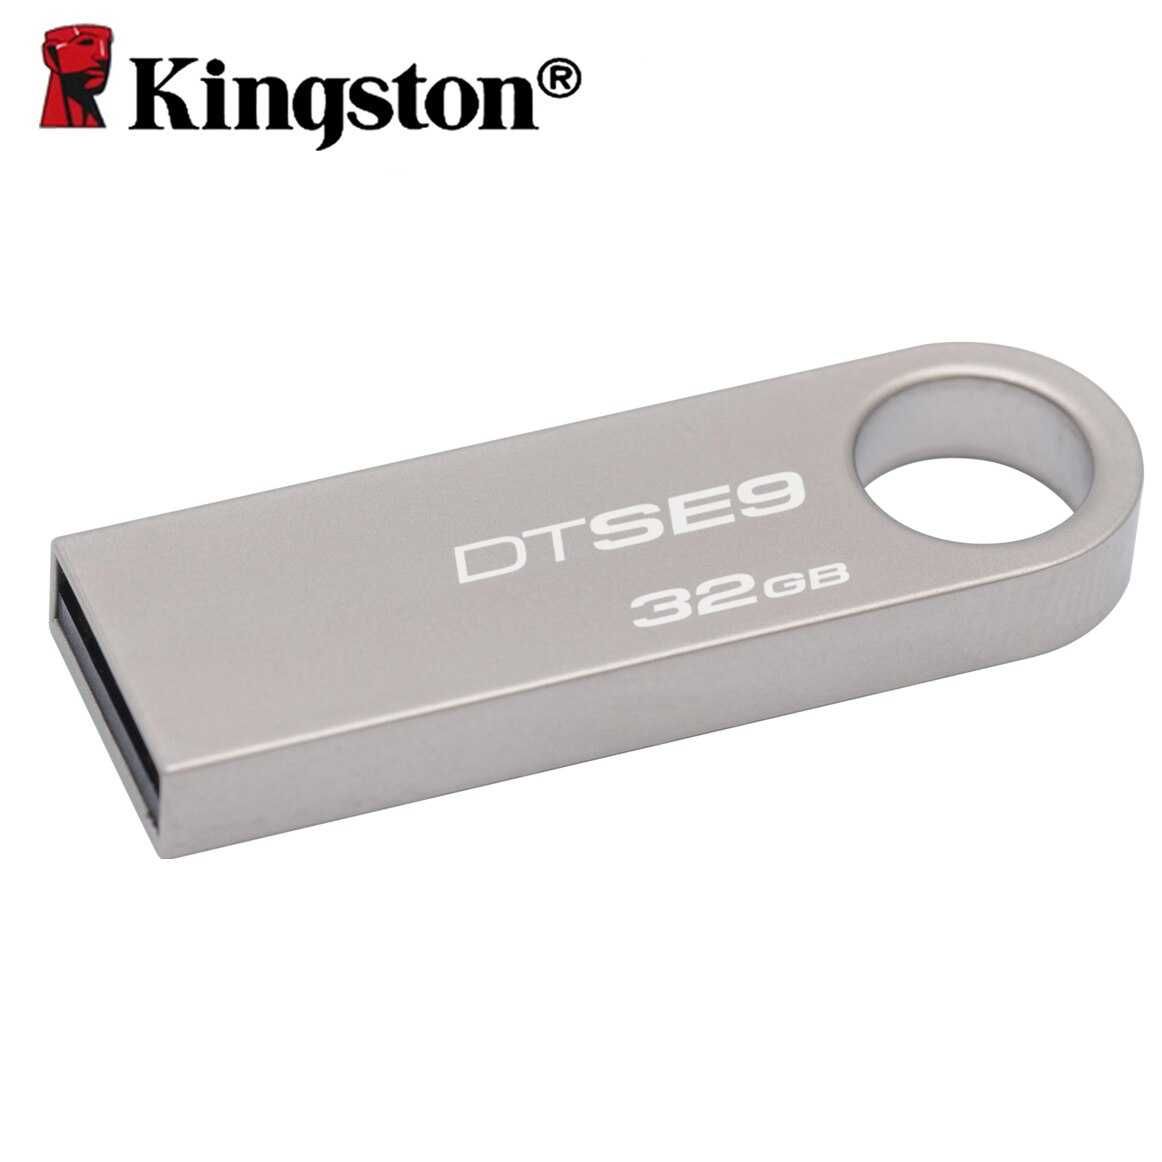 USB fleshka remont / Ремонт USB флешок / (Восстановление данных)